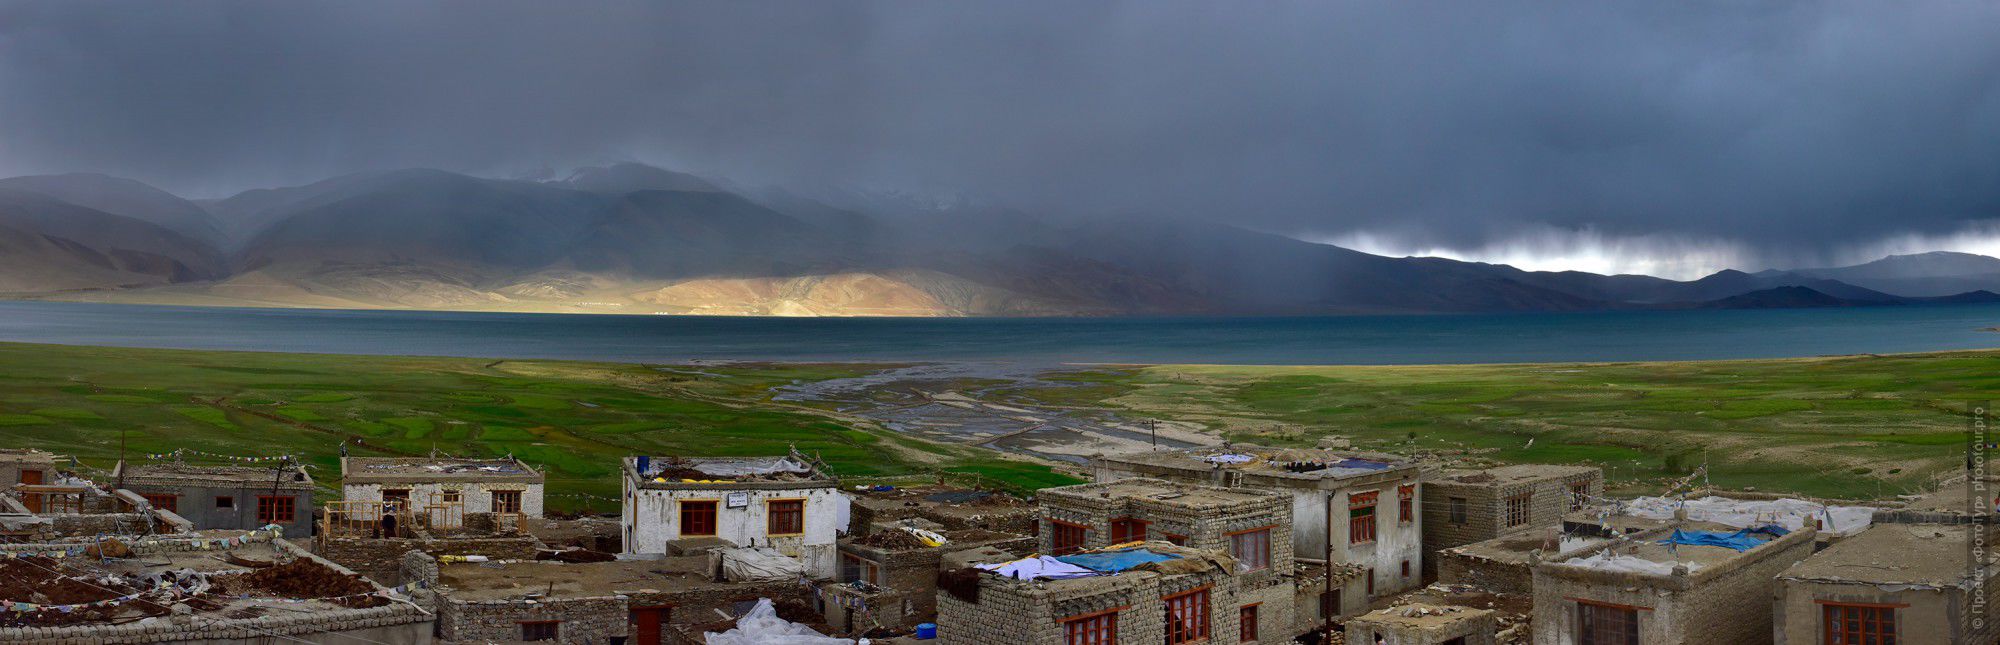 Фотография Грозовой закат на Тсо Морири. Фототур по высокогорным озерам Тибета, Ладакх.